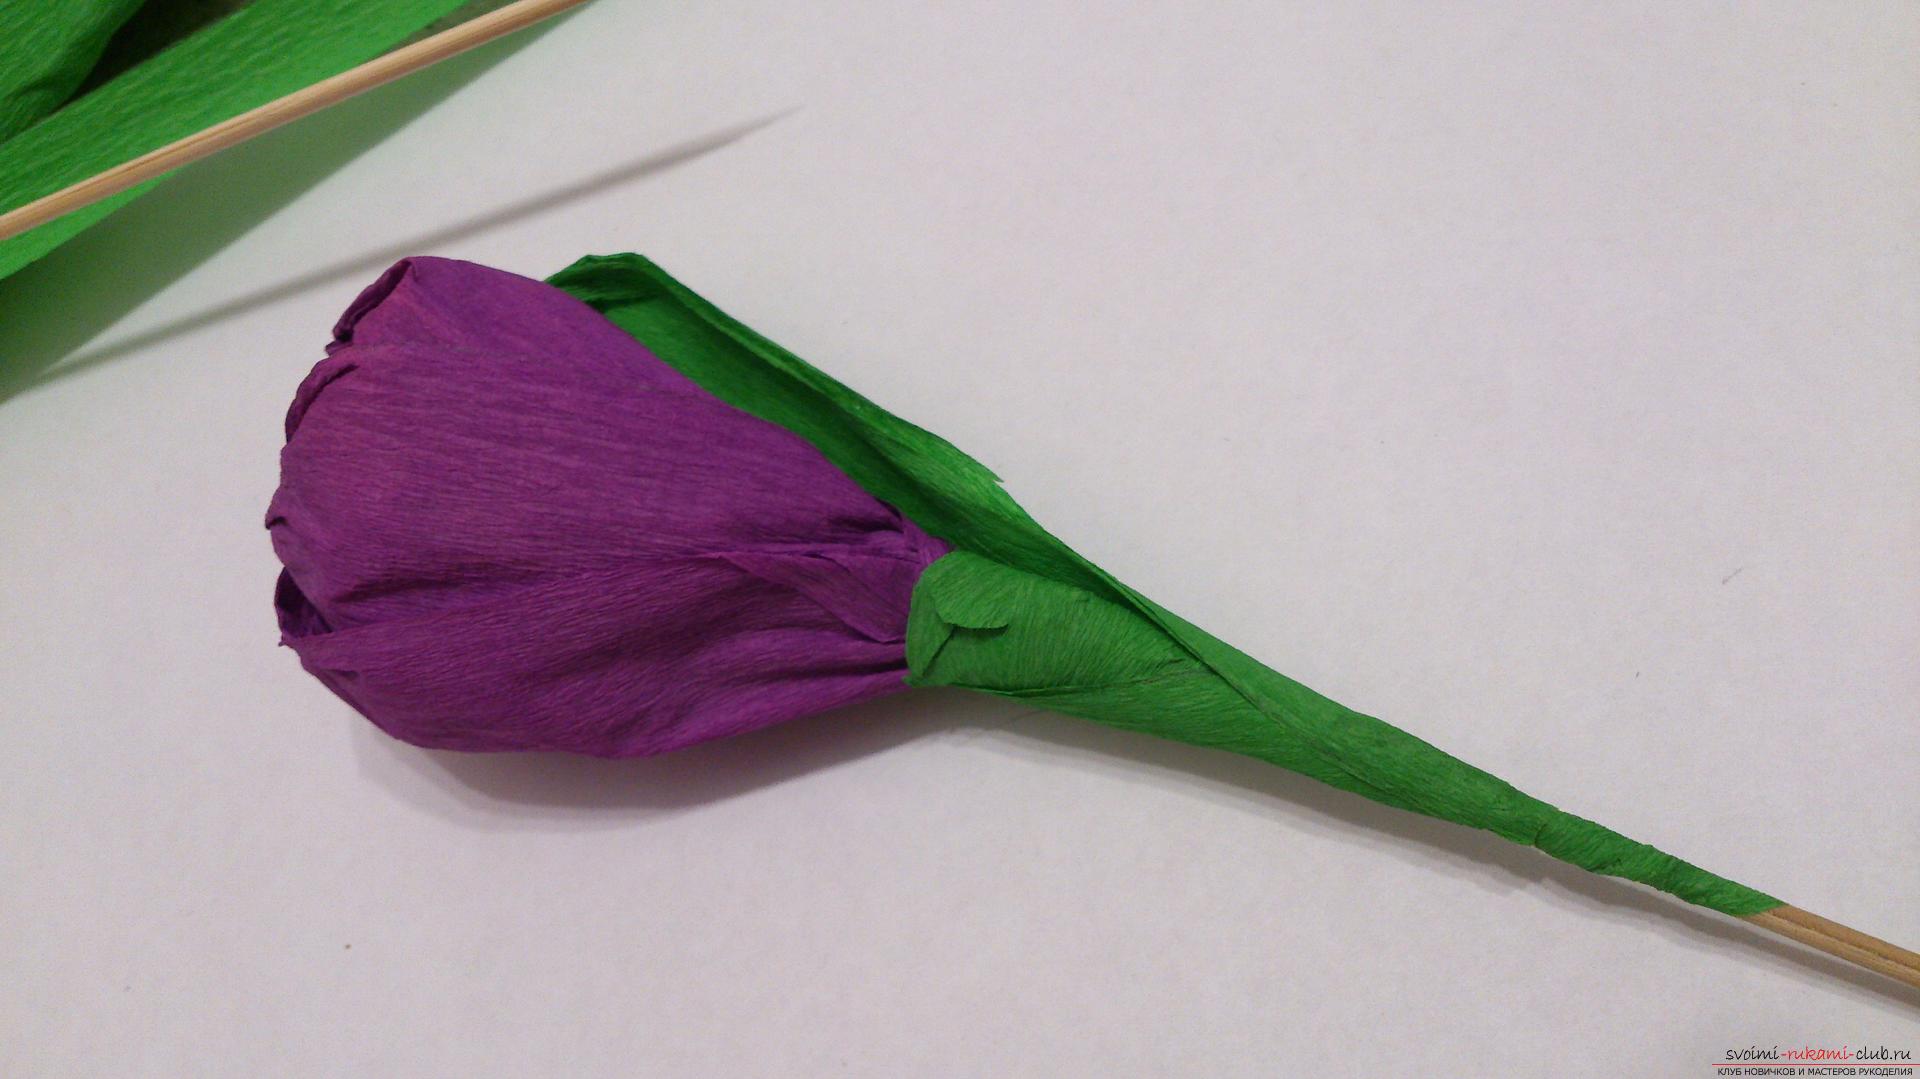 Мастер-класс научит как изготовить цветы из бумаги своими руками и составить из них букеты из конфет.. Фото №15